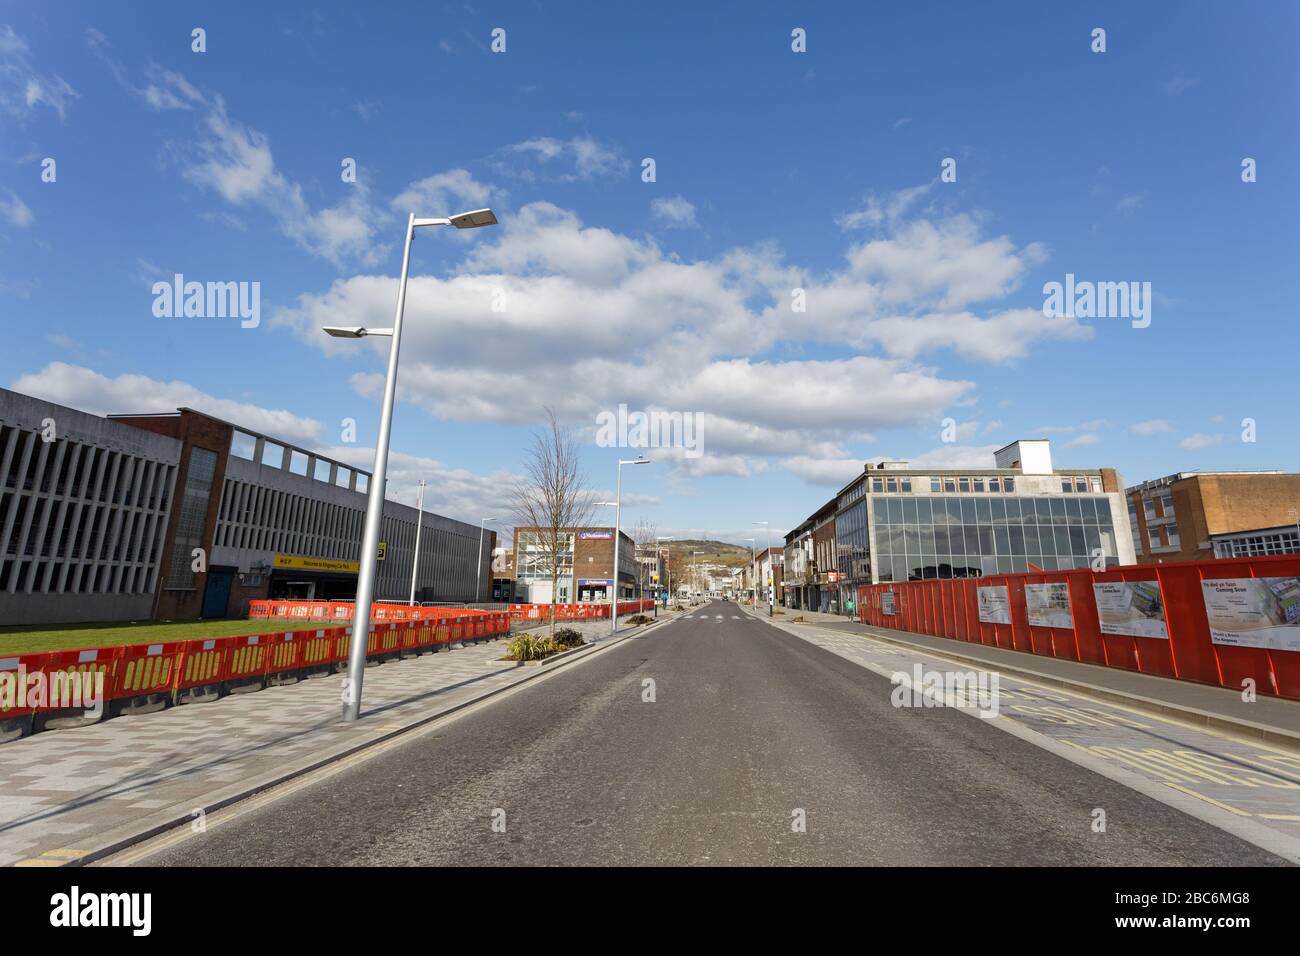 Abgebildet: Der Kingsway, eine der verkehrsreichsten Straßen im Zentrum der Stadt, ist heute in Swansea, Wales, Großbritannien, verlassen. Sonntag, 29. März 2020 Re: Desertion caus Stockfoto